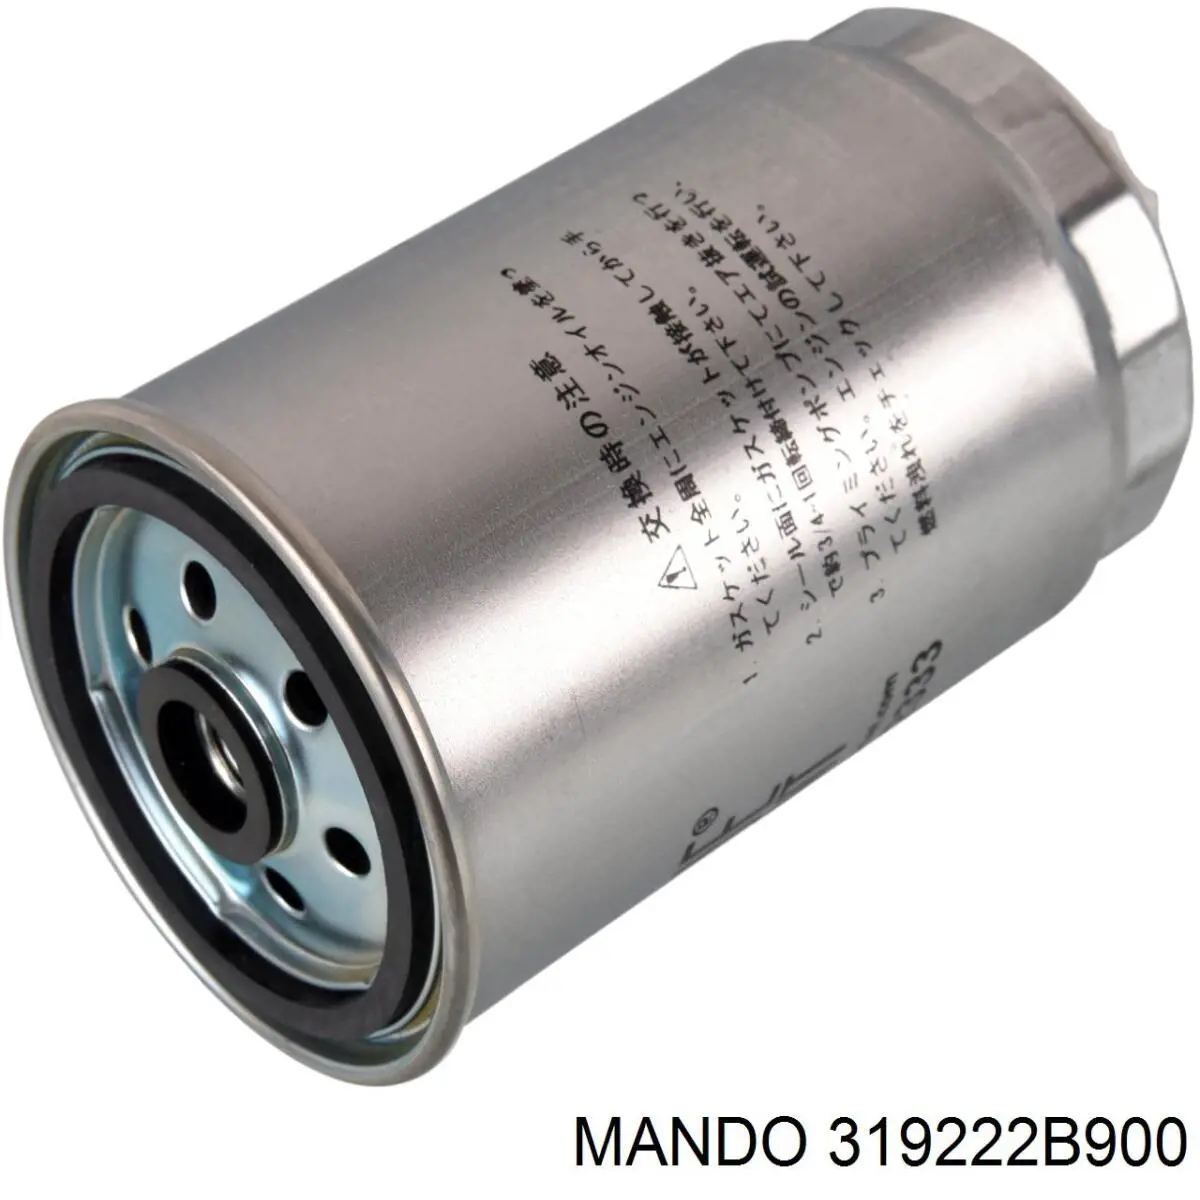 319222B900 Mando топливный фильтр